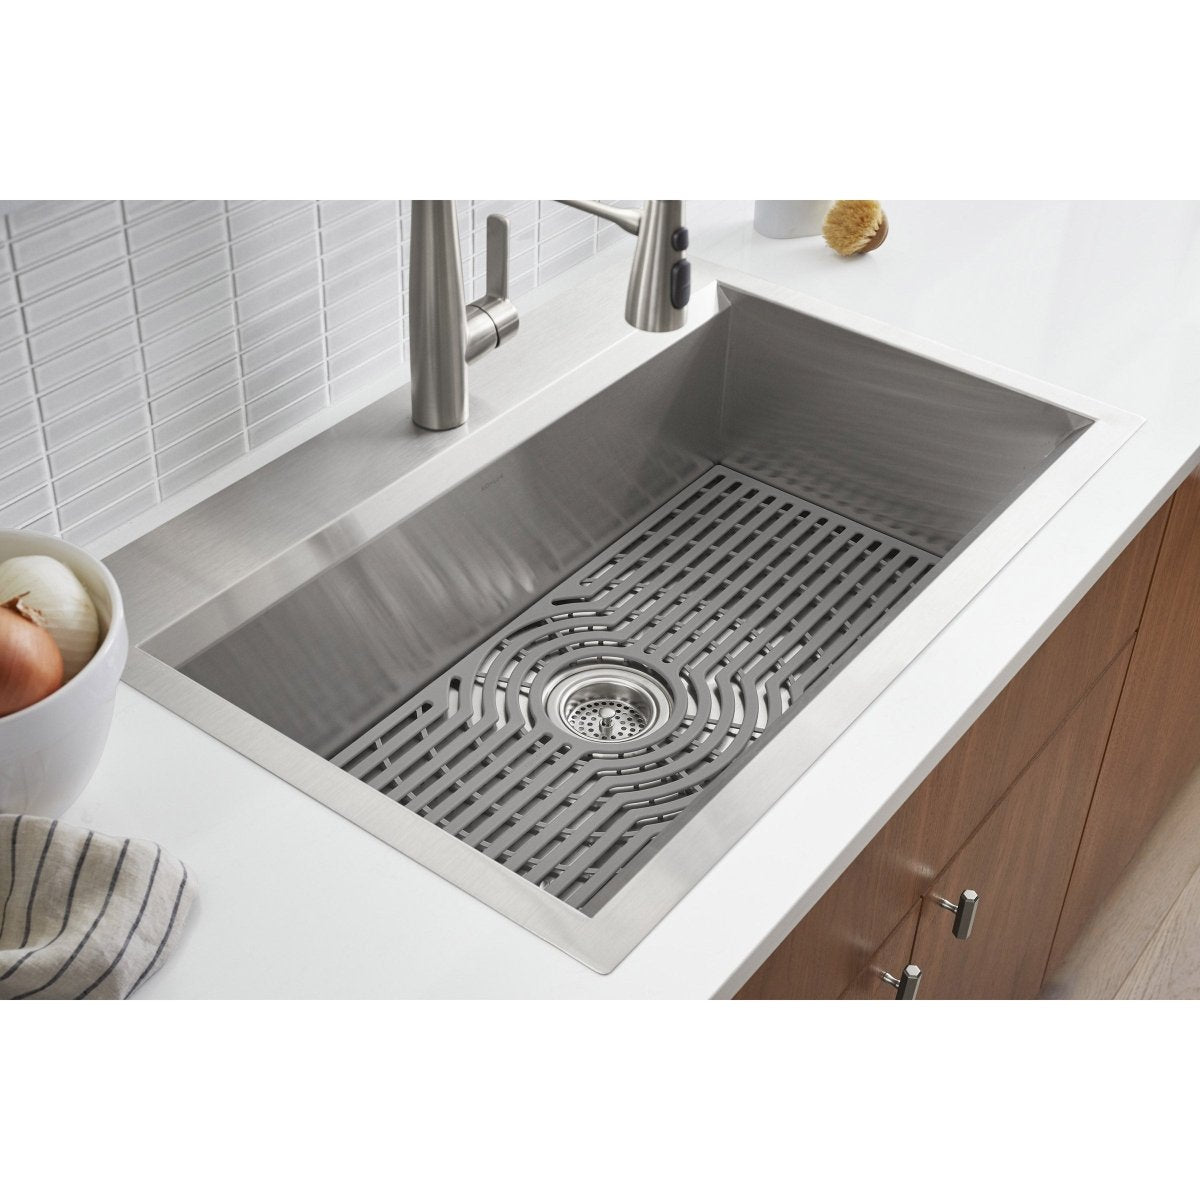 Kohler Pro-Inspired Kitchen Sink Kit - Alpine Outlets